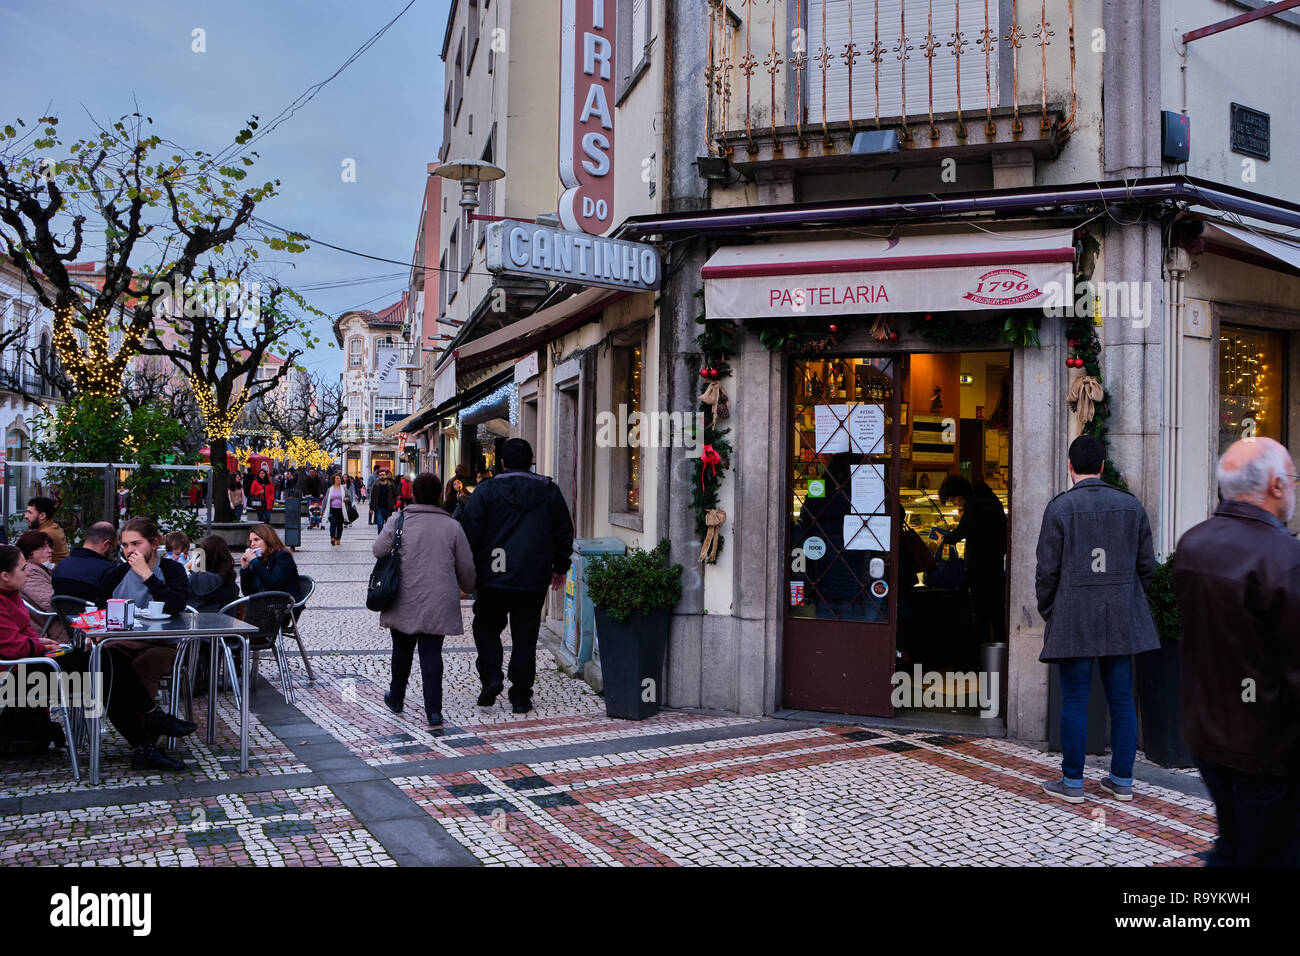 Braga, Portugal - Dezember 23, 2018: In der Ferienzeit die Straßen der Stadt gefüllt mit Menschen. Braga, Portugal. Stockfoto